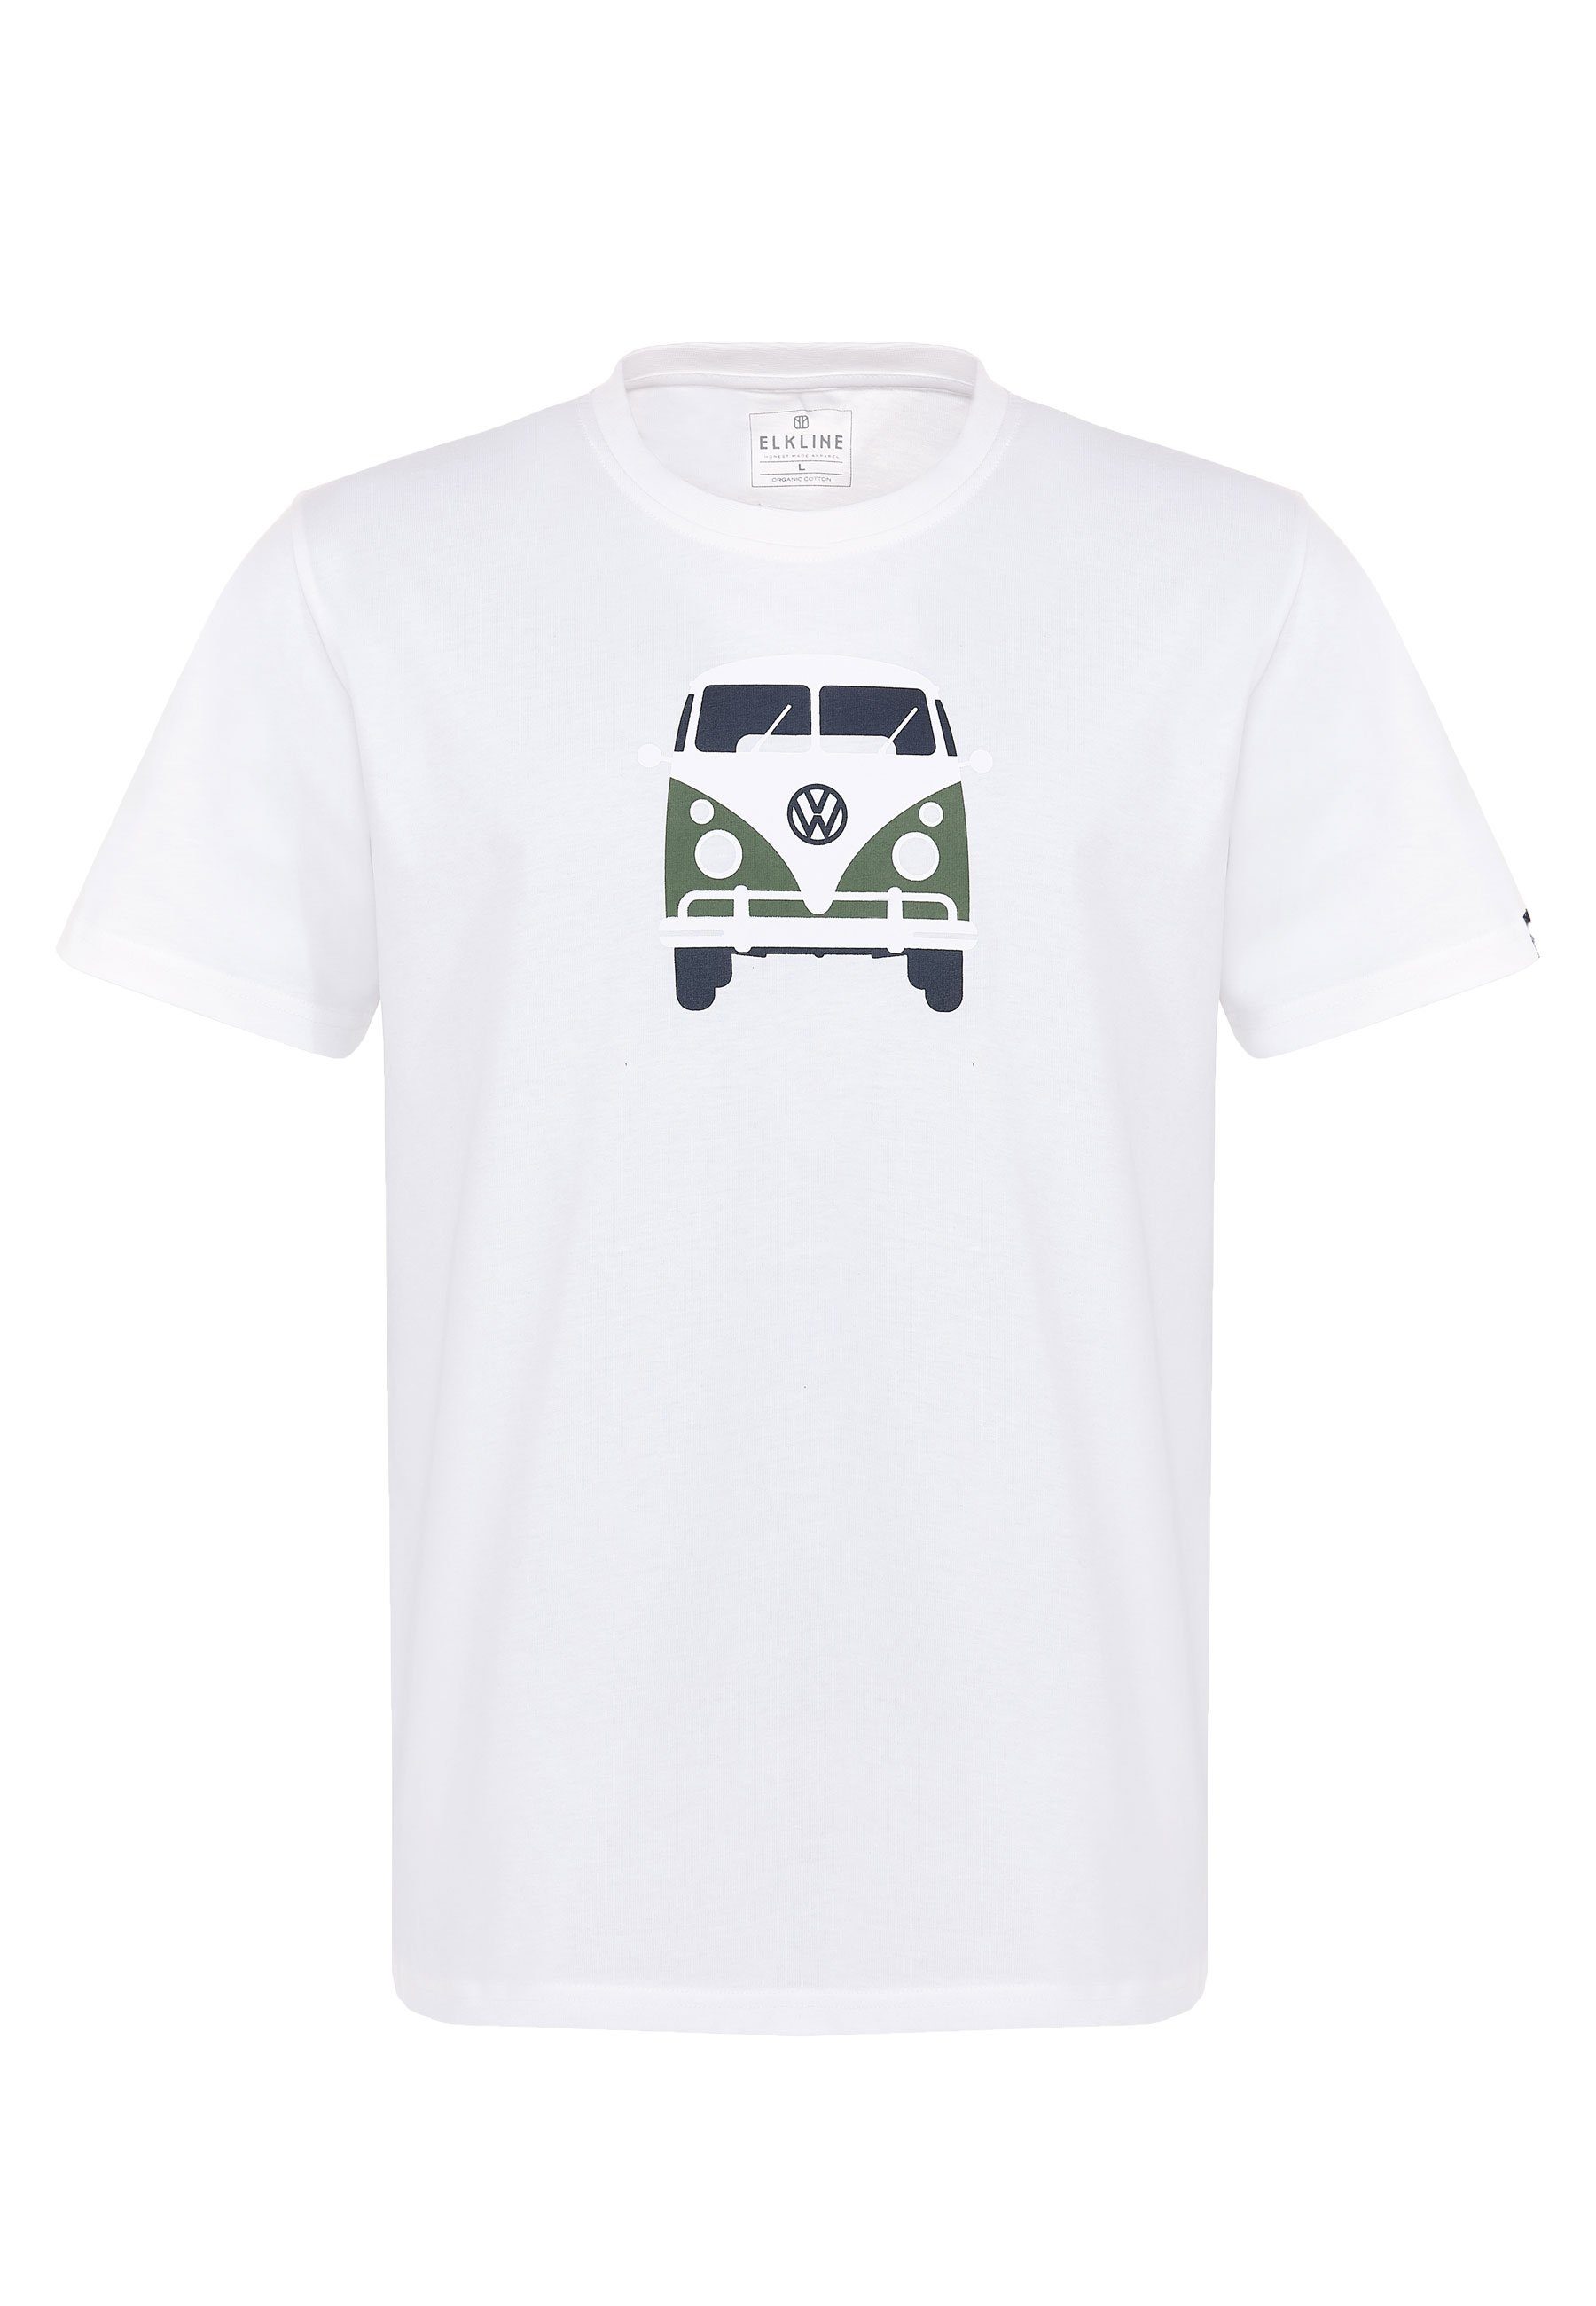 An der Spitze Elkline T-Shirt Print Rücken lizenzierter White VW Bulli Brust Methusalem